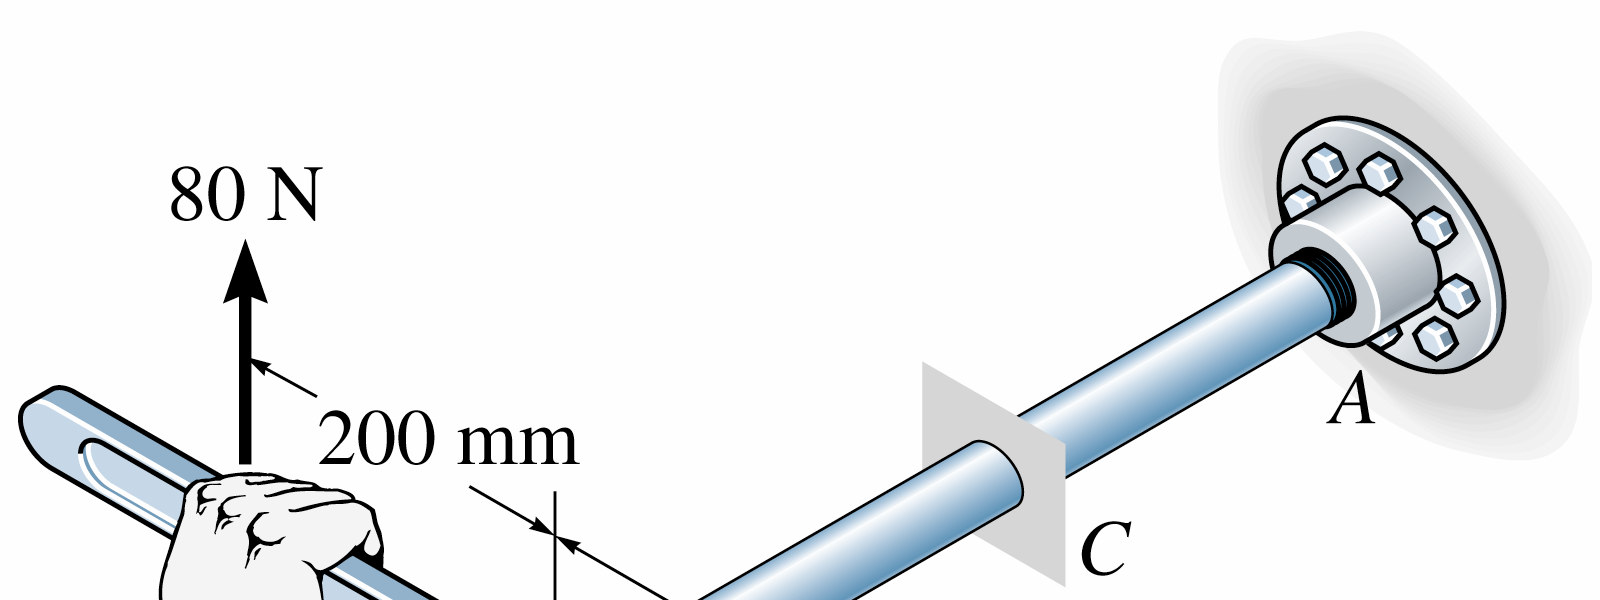 Exercício 1 1) O tubo mostrado na figura tem um diâmetro interno de 80 mm e diâmetro externo de 100 mm.